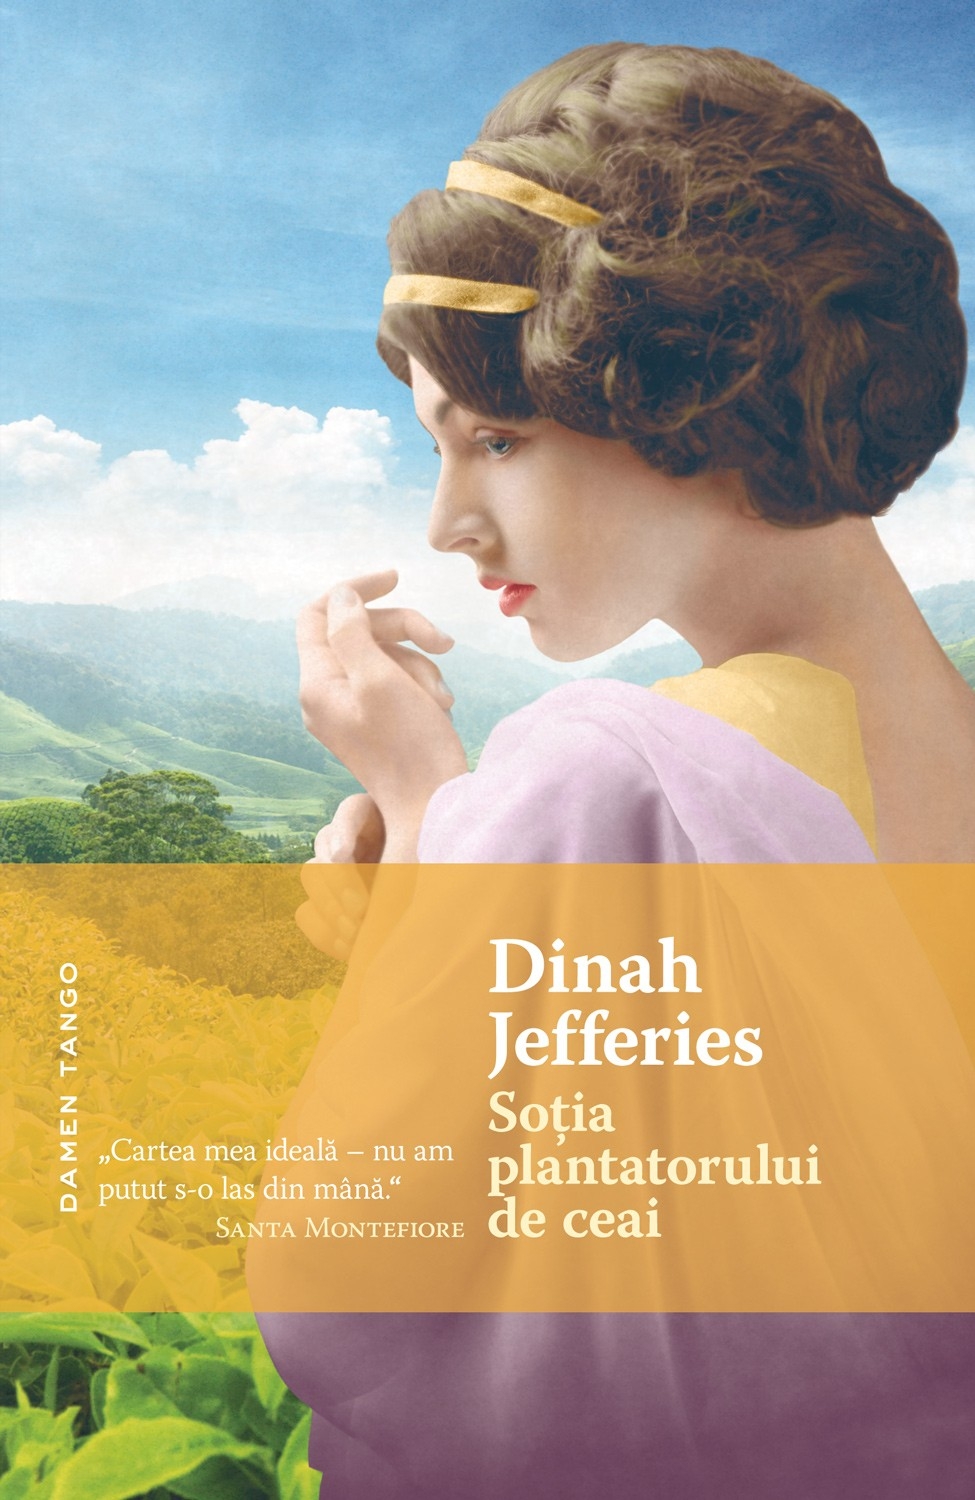 eBook Sotia plantatorului de ceai - Dinah Jefferies